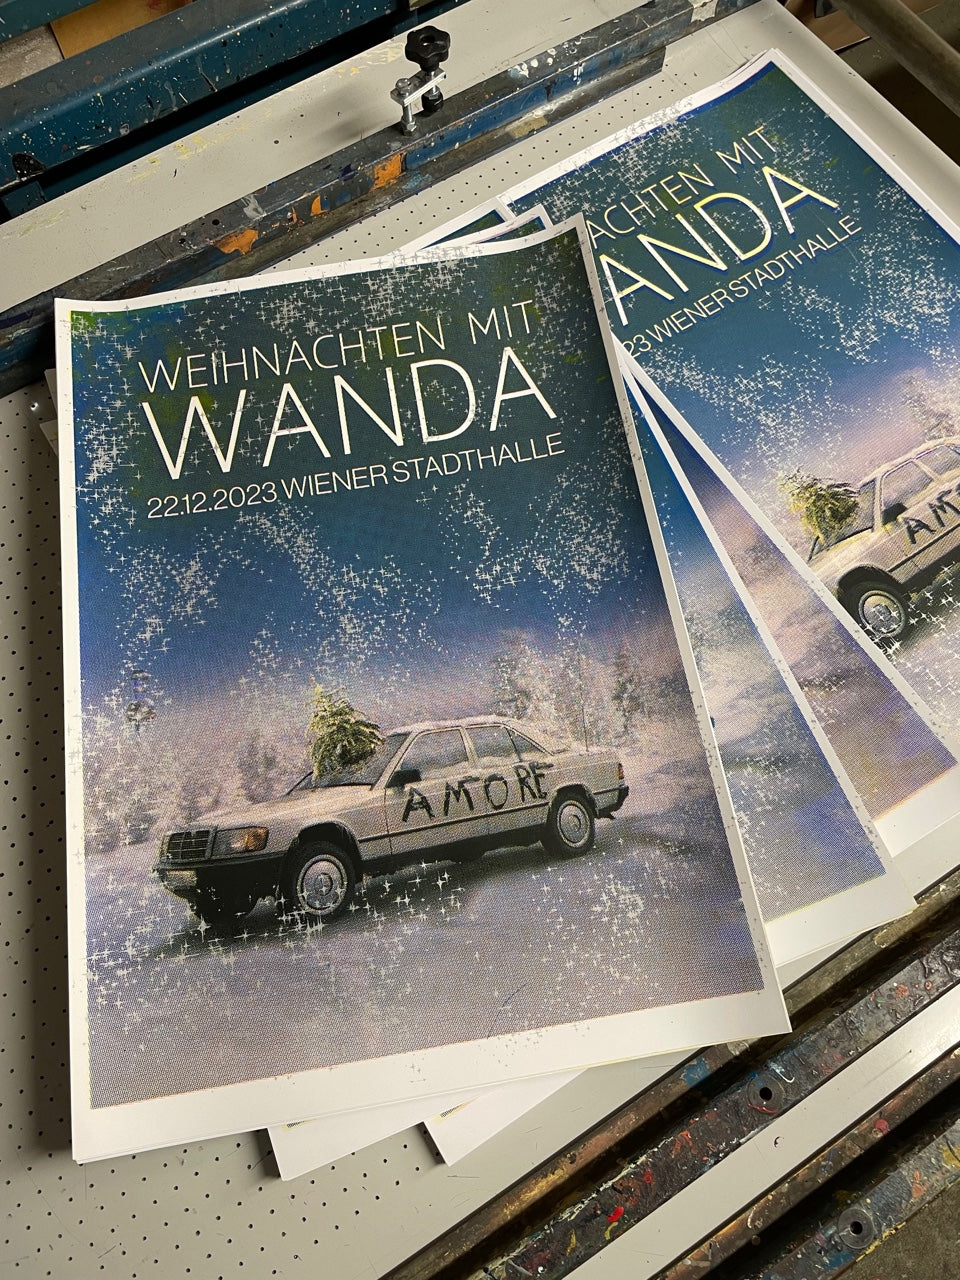 WANDA Siebdruckposter "Weihnachten mit Wanda"